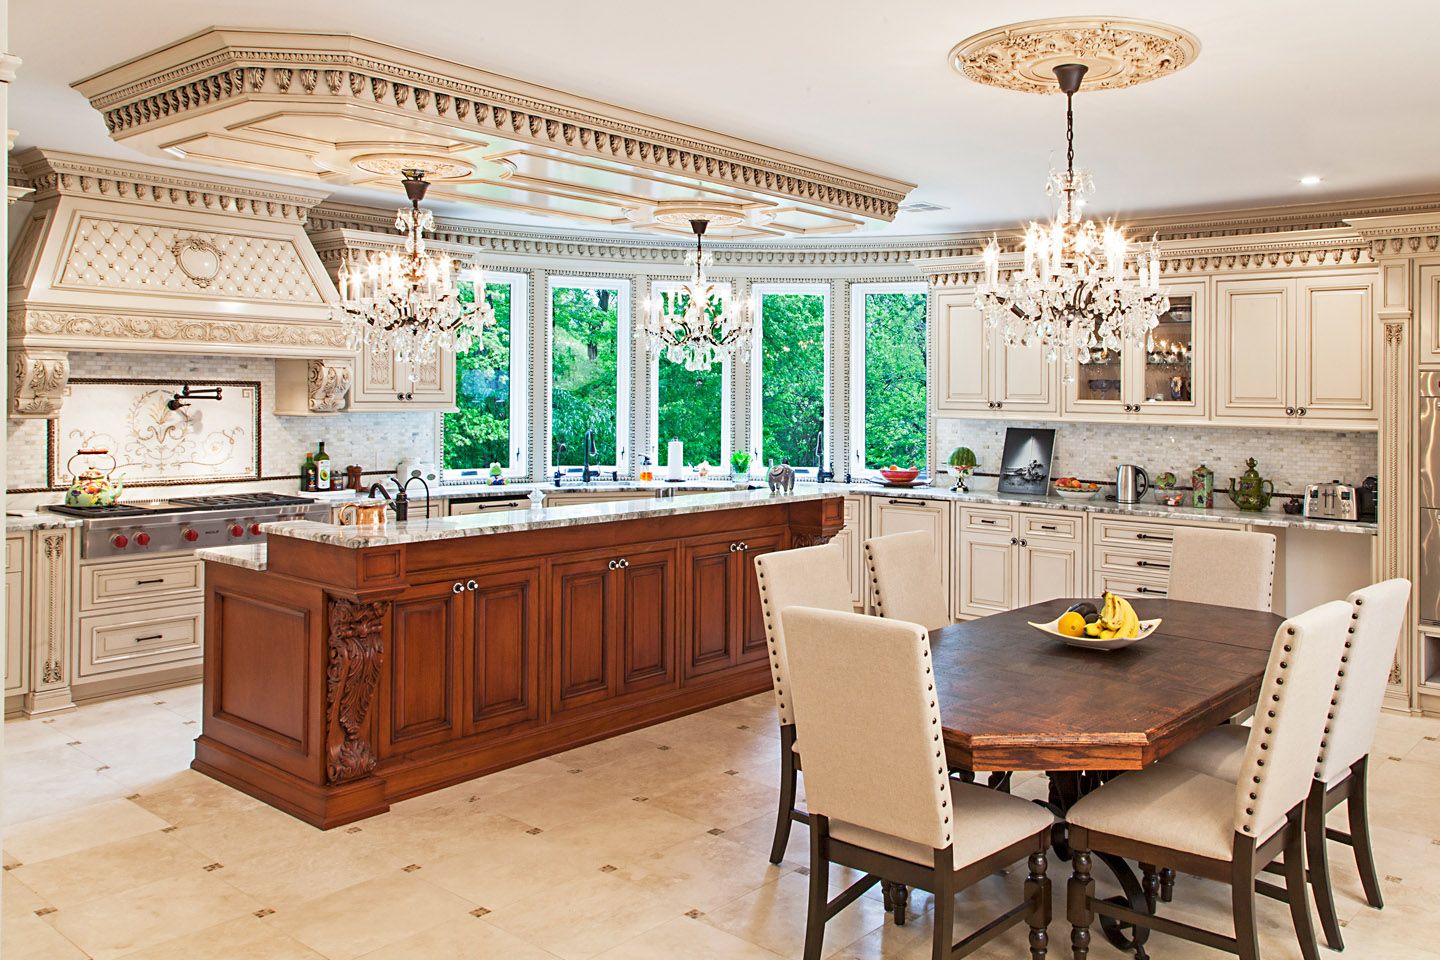  آشپزخانه با کابینت به سبک کلاسیک